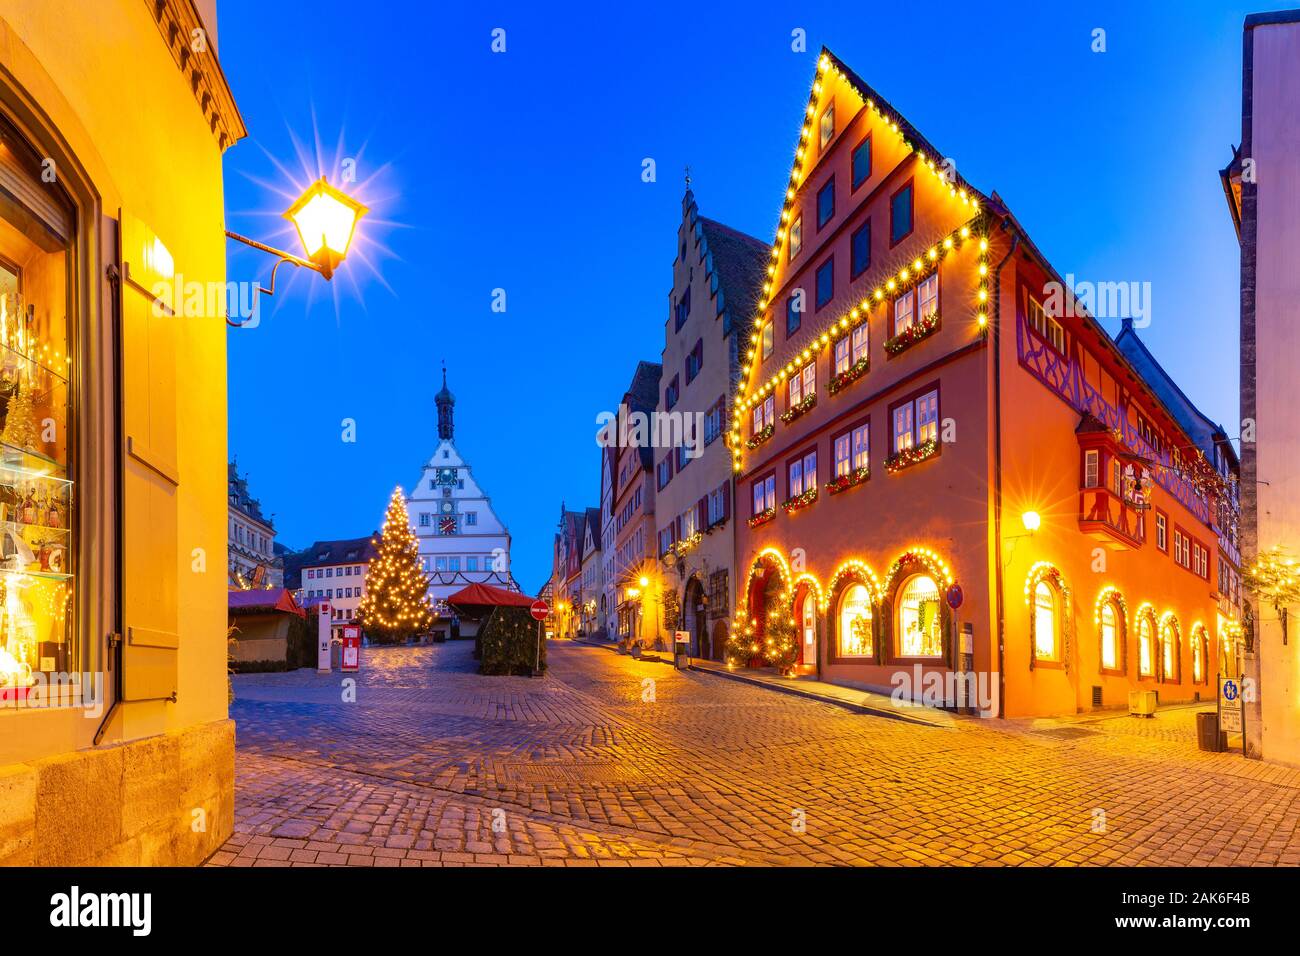 Dekoriert und beleuchtet Weihnachten Straße und Marktplatz in der mittelalterlichen Altstadt von Rothenburg o.d. Tauber, Bayern, Süddeutschland Stockfoto